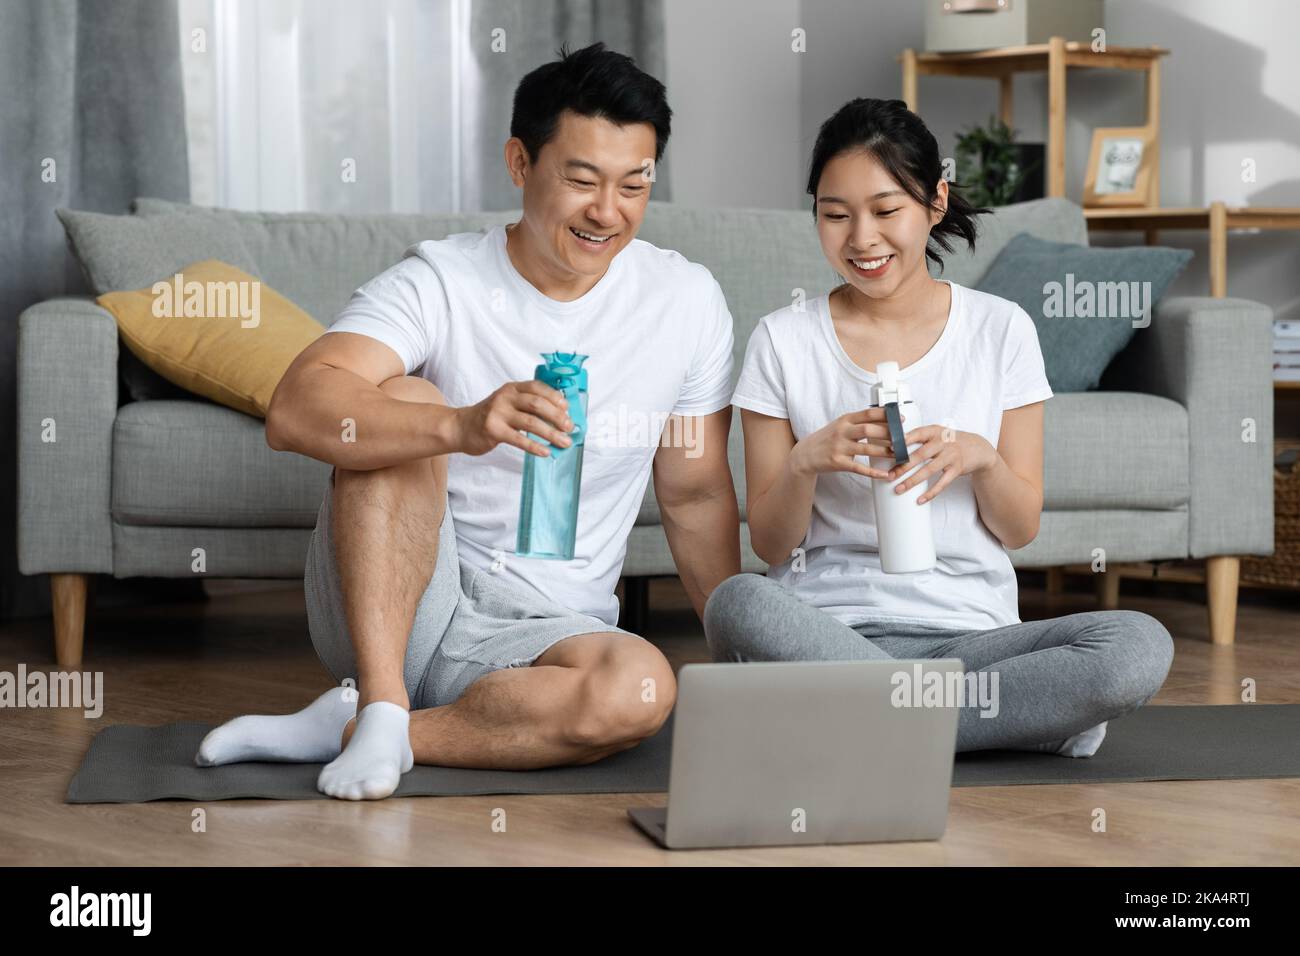 Fröhlicher chinesischer Mann und Frau, die nach dem Training Wasser trinken Stockfoto